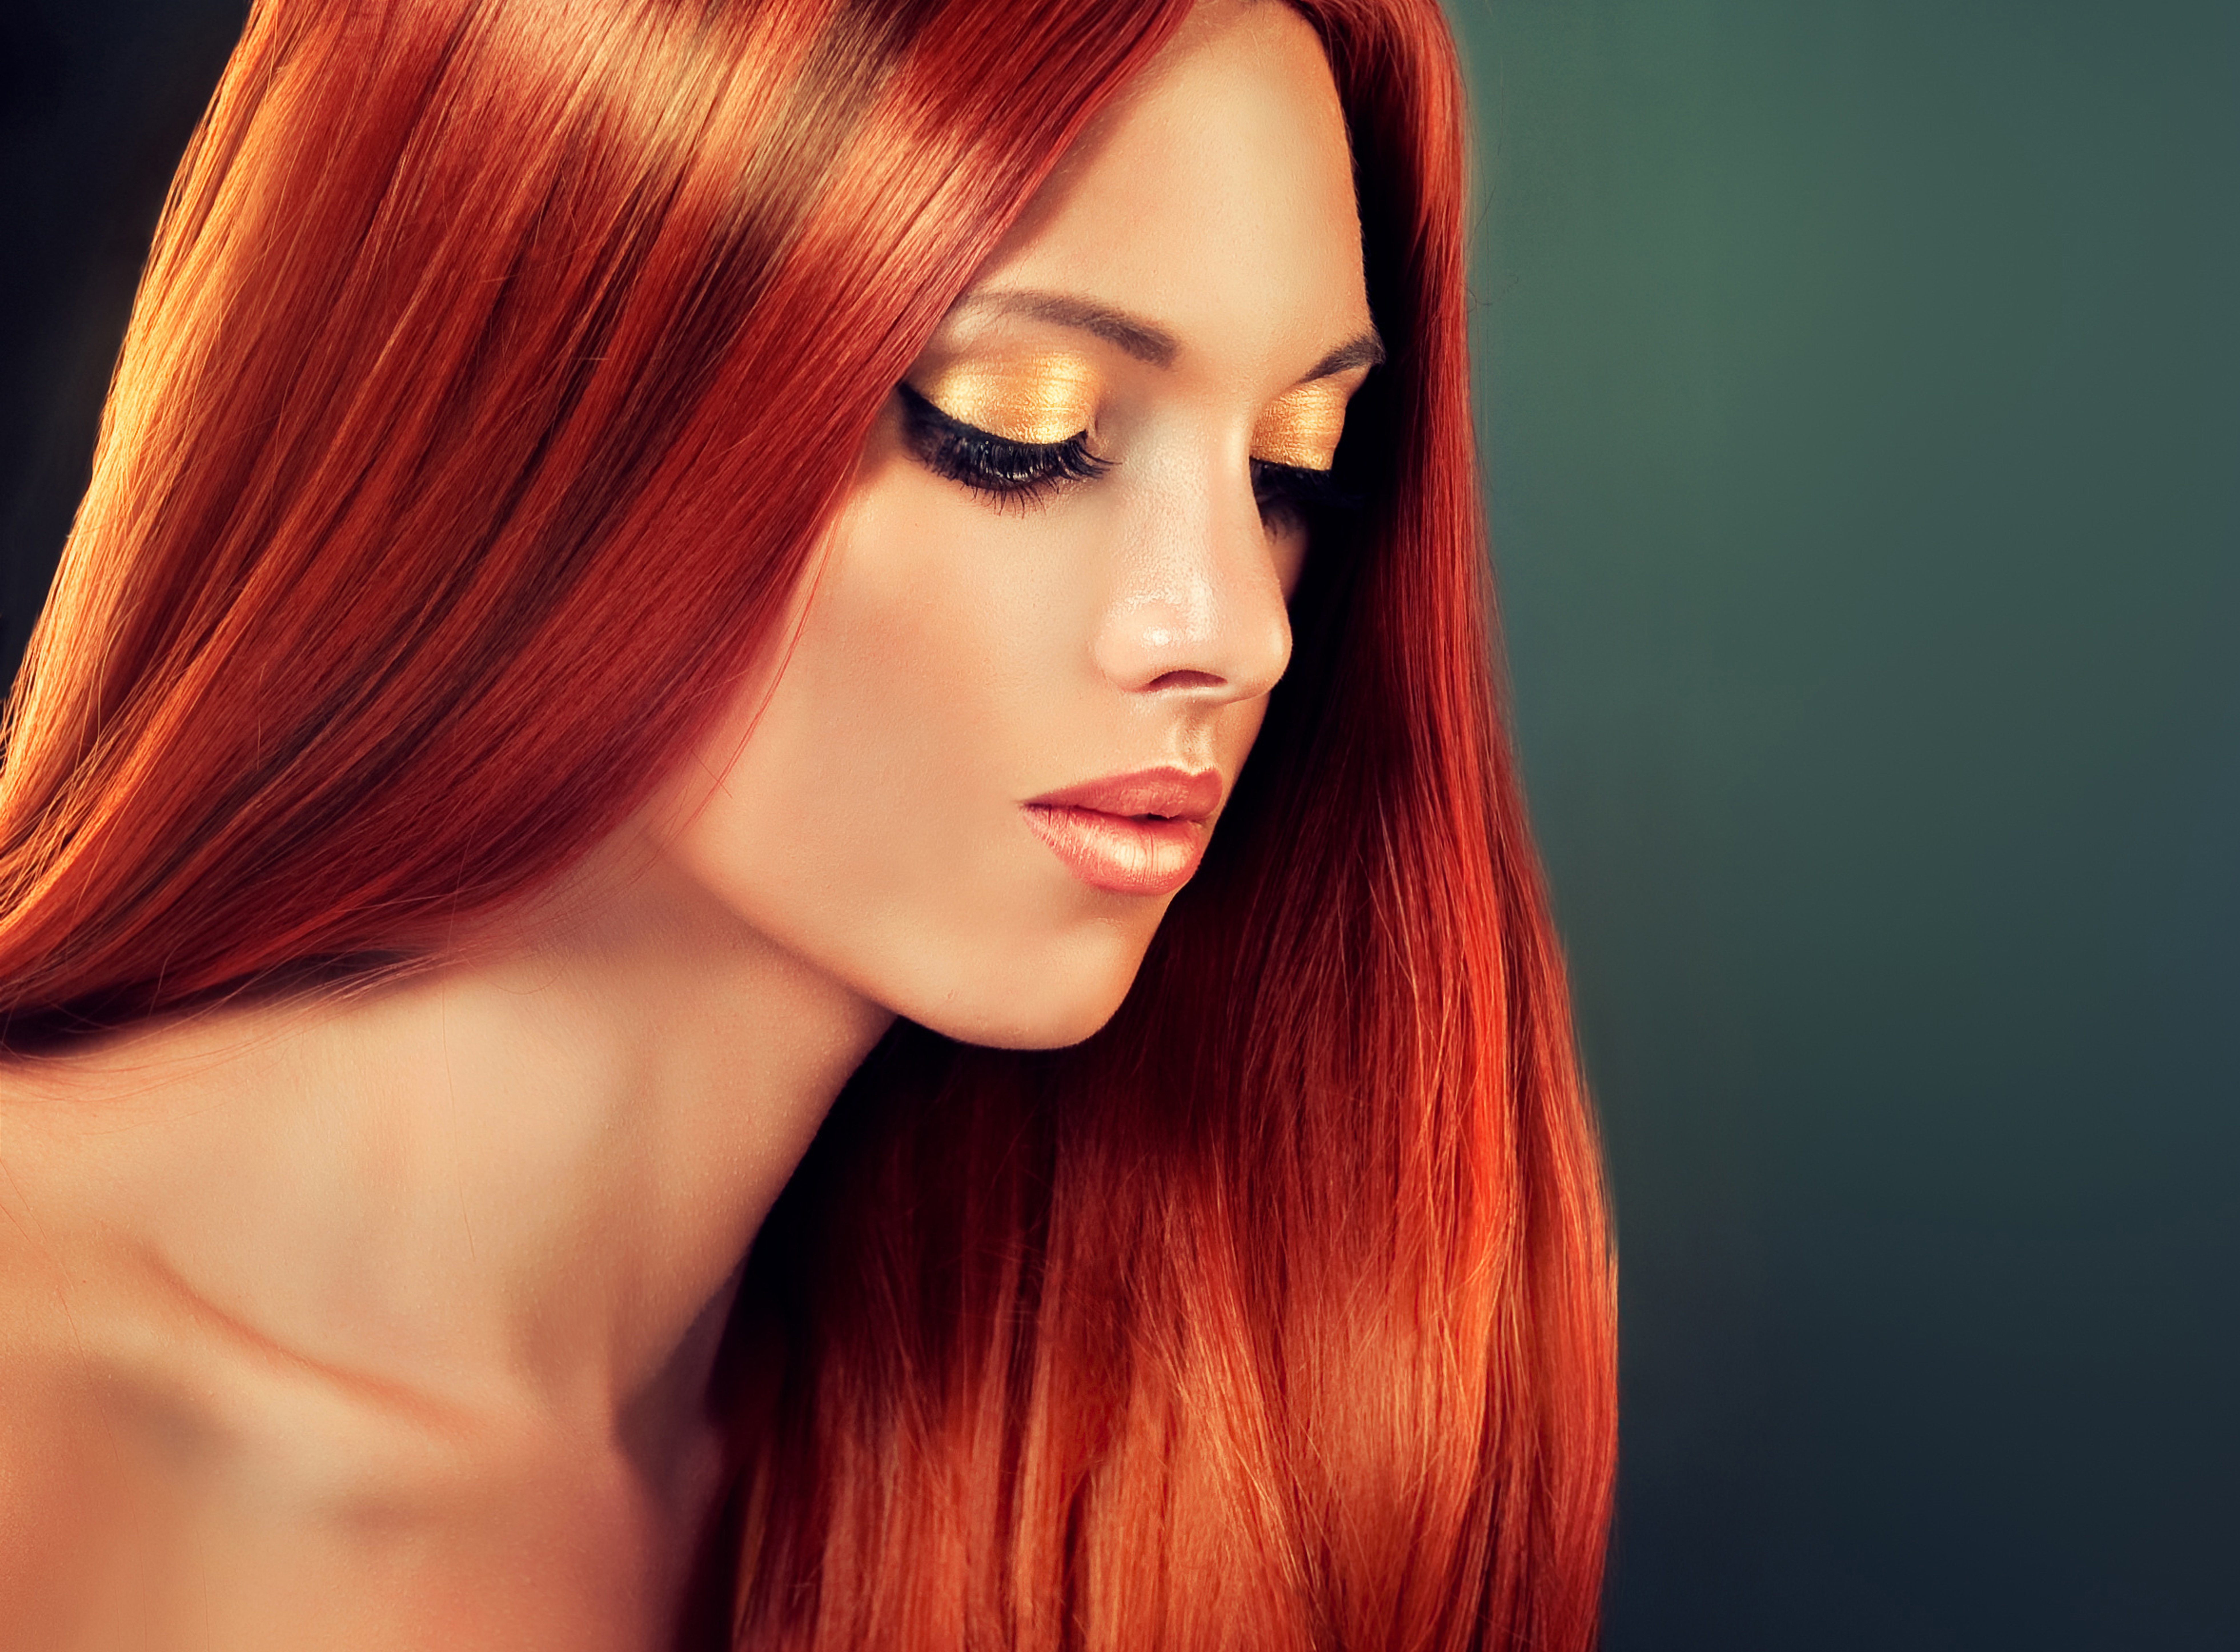 Картинки рыжего цвета. Рыжие волосы. Огненно рыжие волосы. Девушка с огненно рыжими волосами. Красивые рыжие оттенки волос.